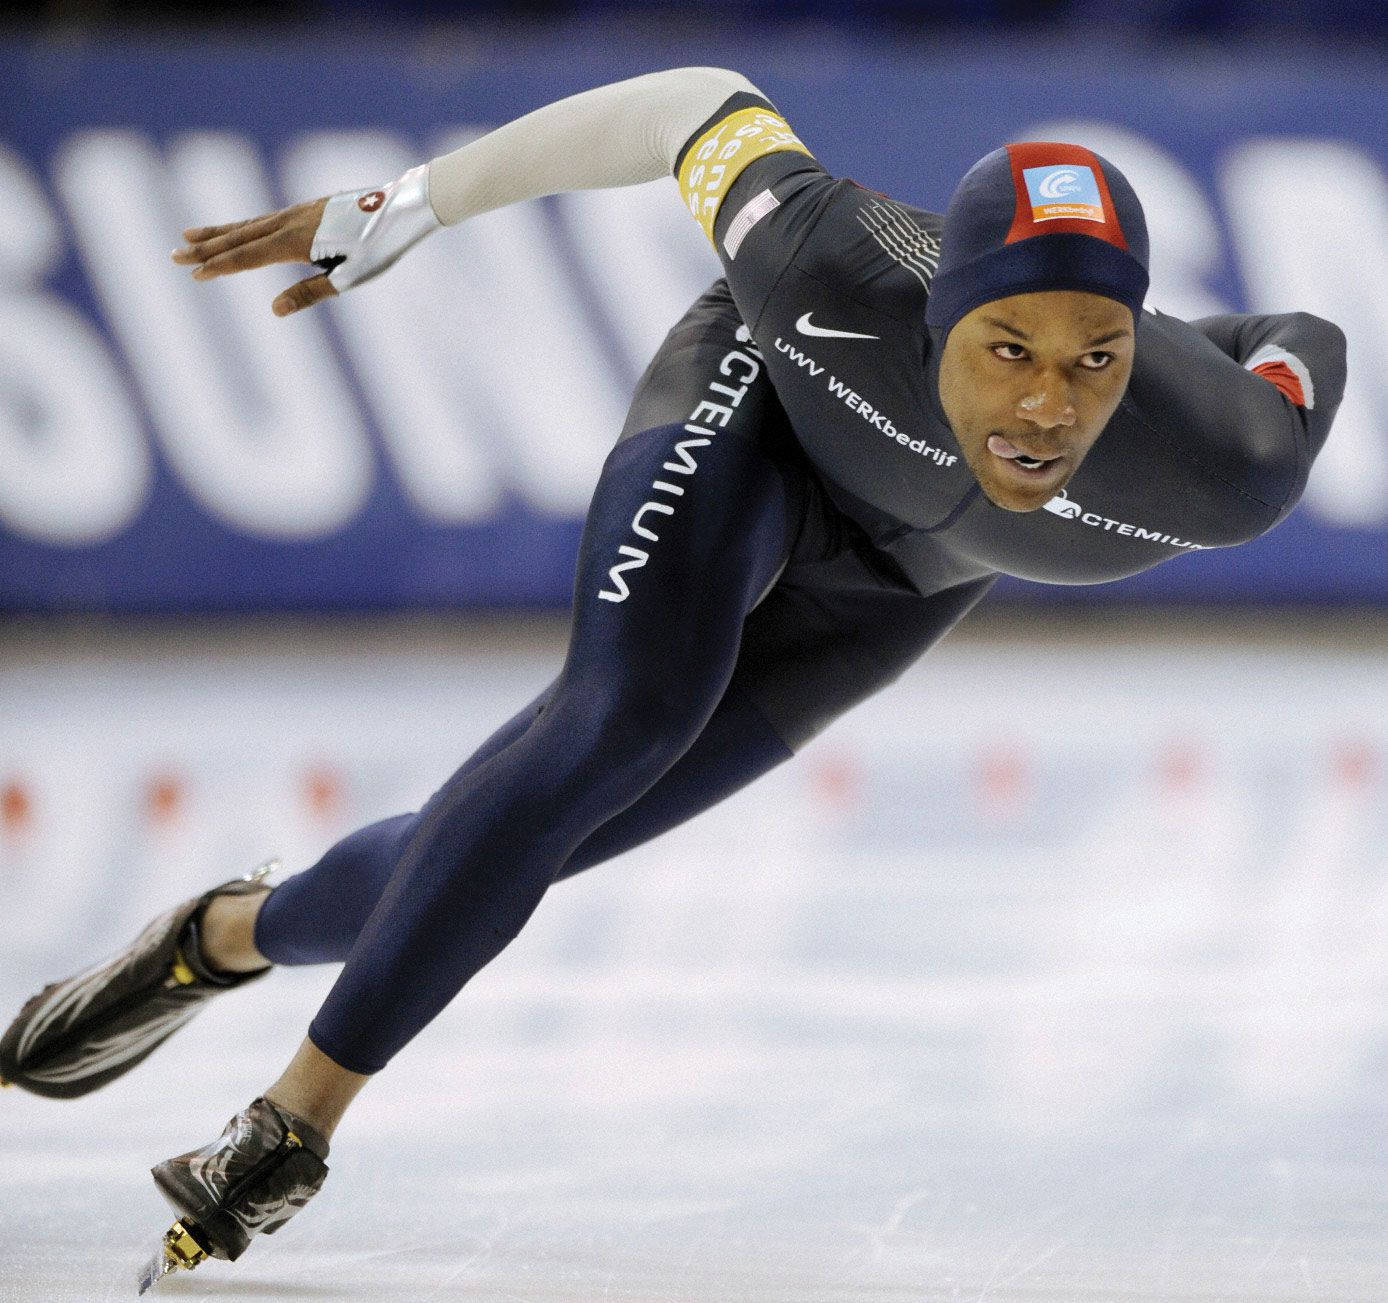 Shanidavis Eiskunstlauf Bei Den Olympischen Winterspielen 2014 Wallpaper